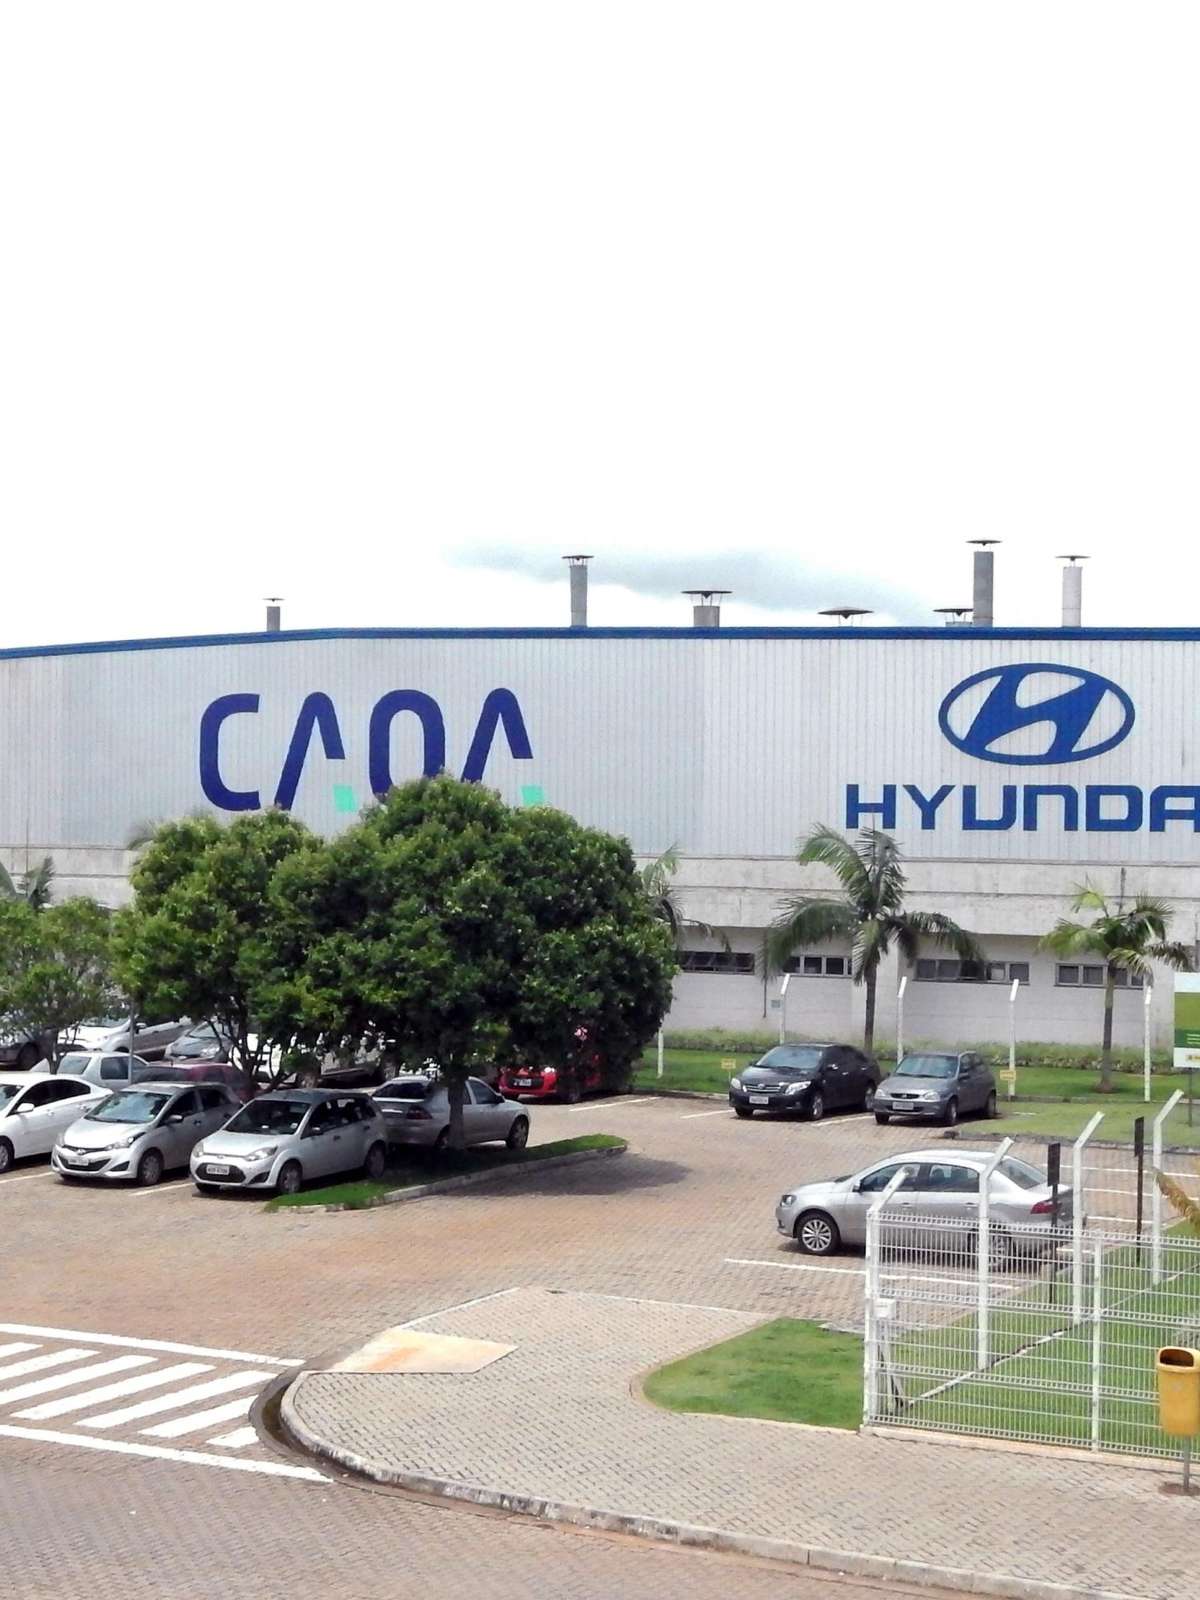 Caoa revela planos para Chery e Hyundai após investimento